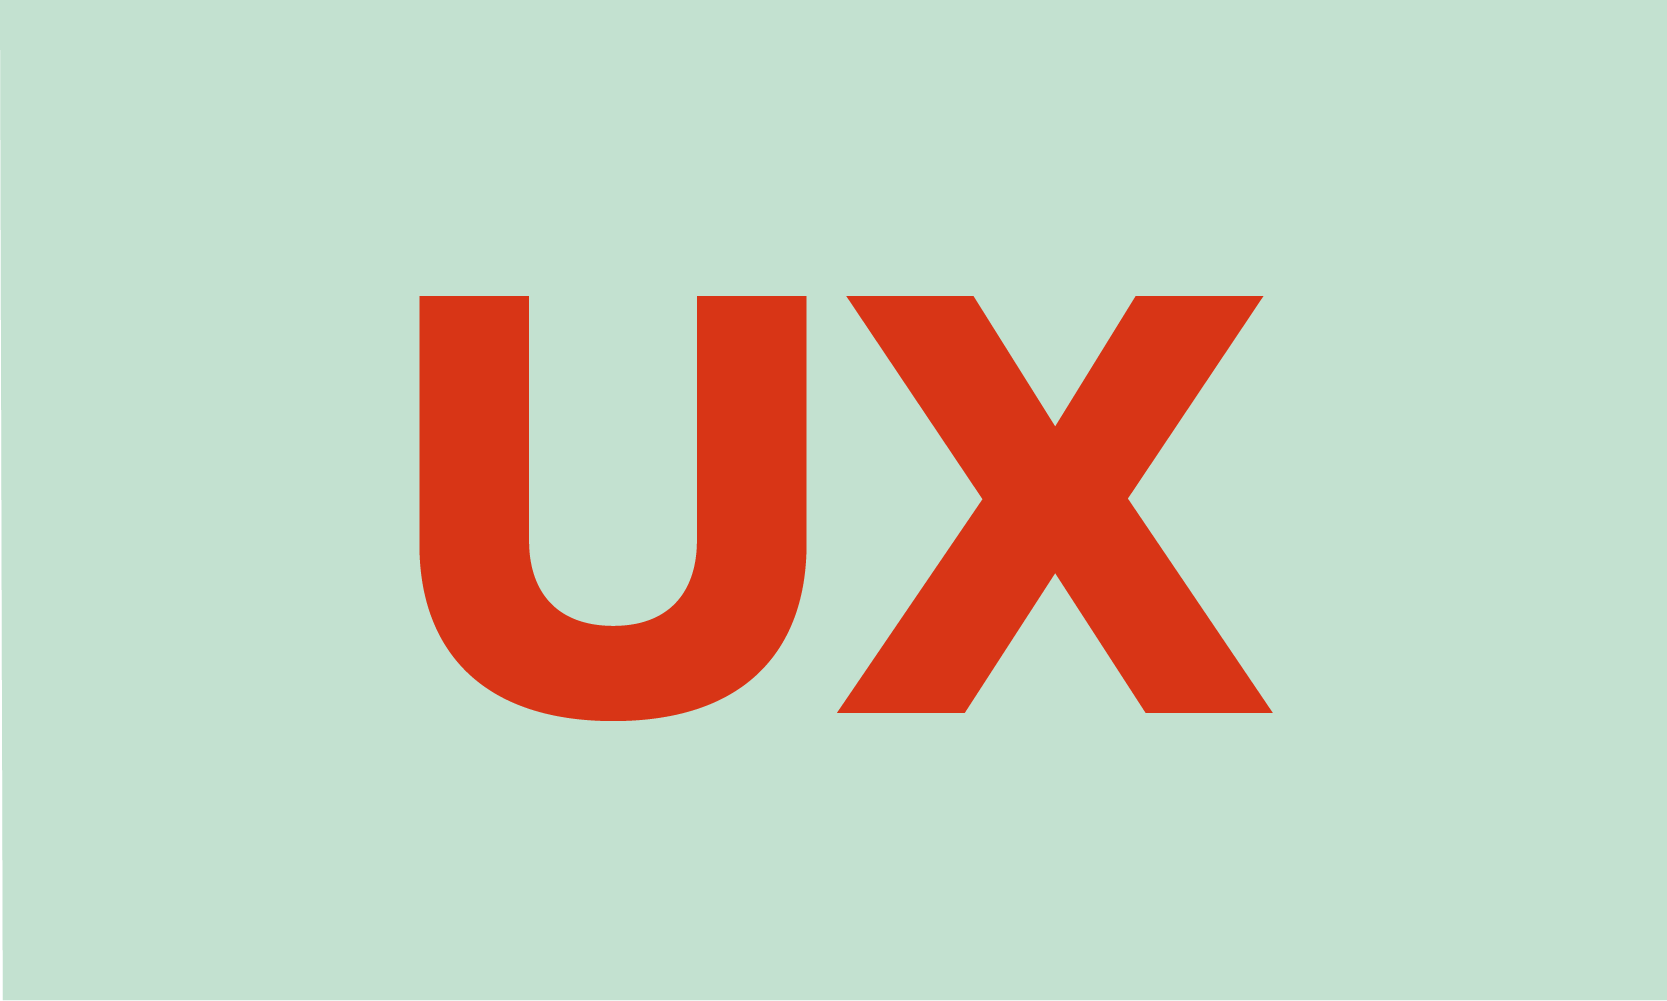 Dieses Bild enthält die Abkürzung "UX" (User Experience, auf deutsch: Nutzererfahrung) und soll anschaulich für den Textbereich darunter sein.